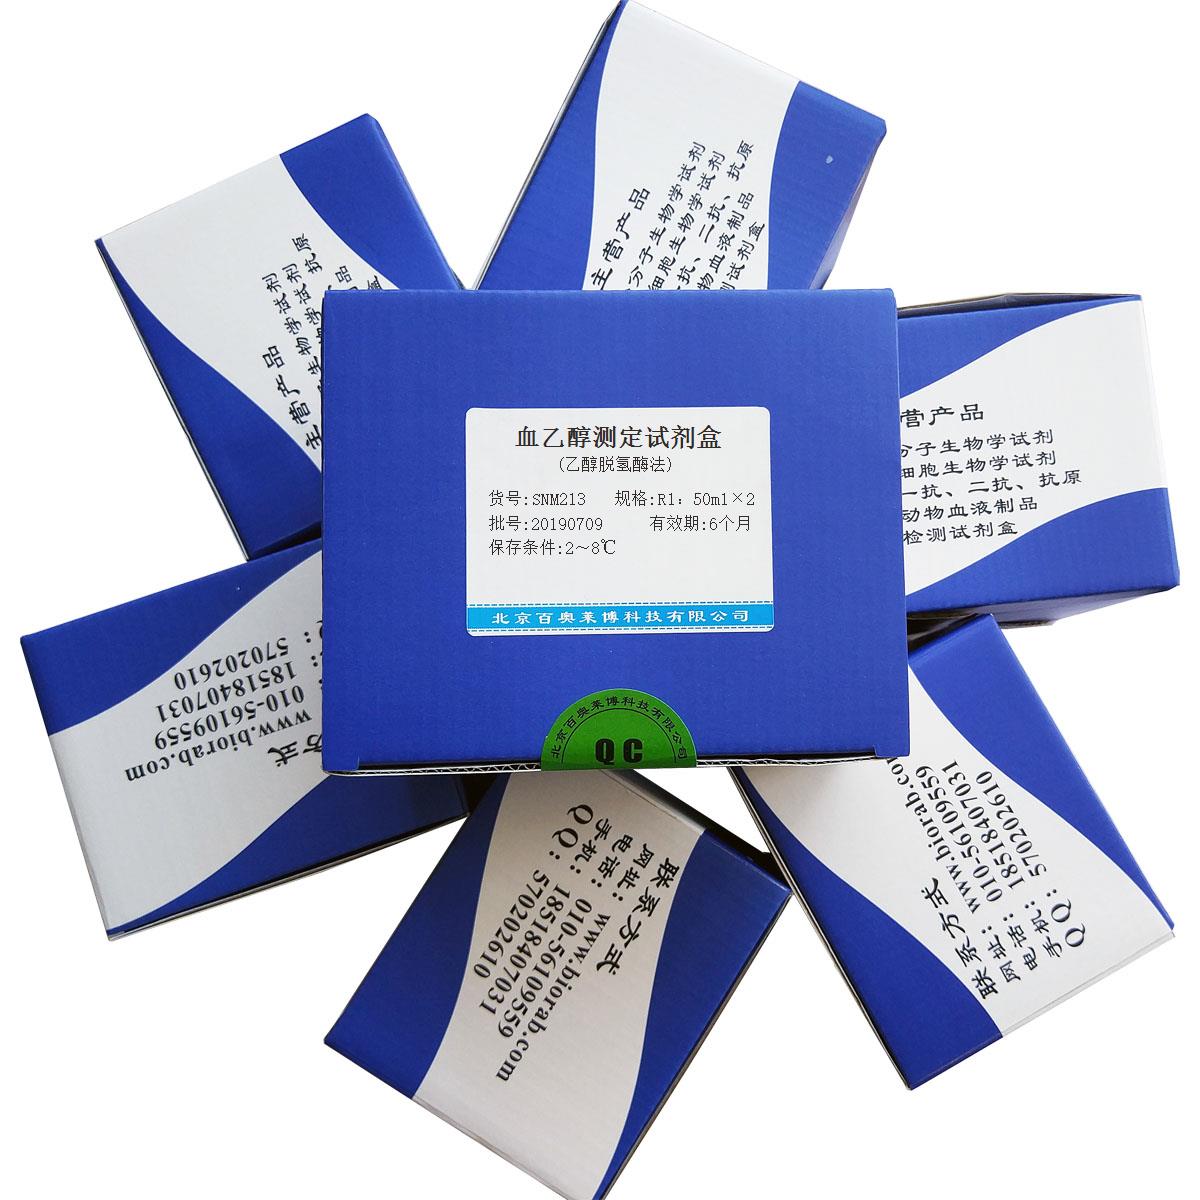 血乙醇测定试剂盒(乙醇脱氢酶法)北京供应商